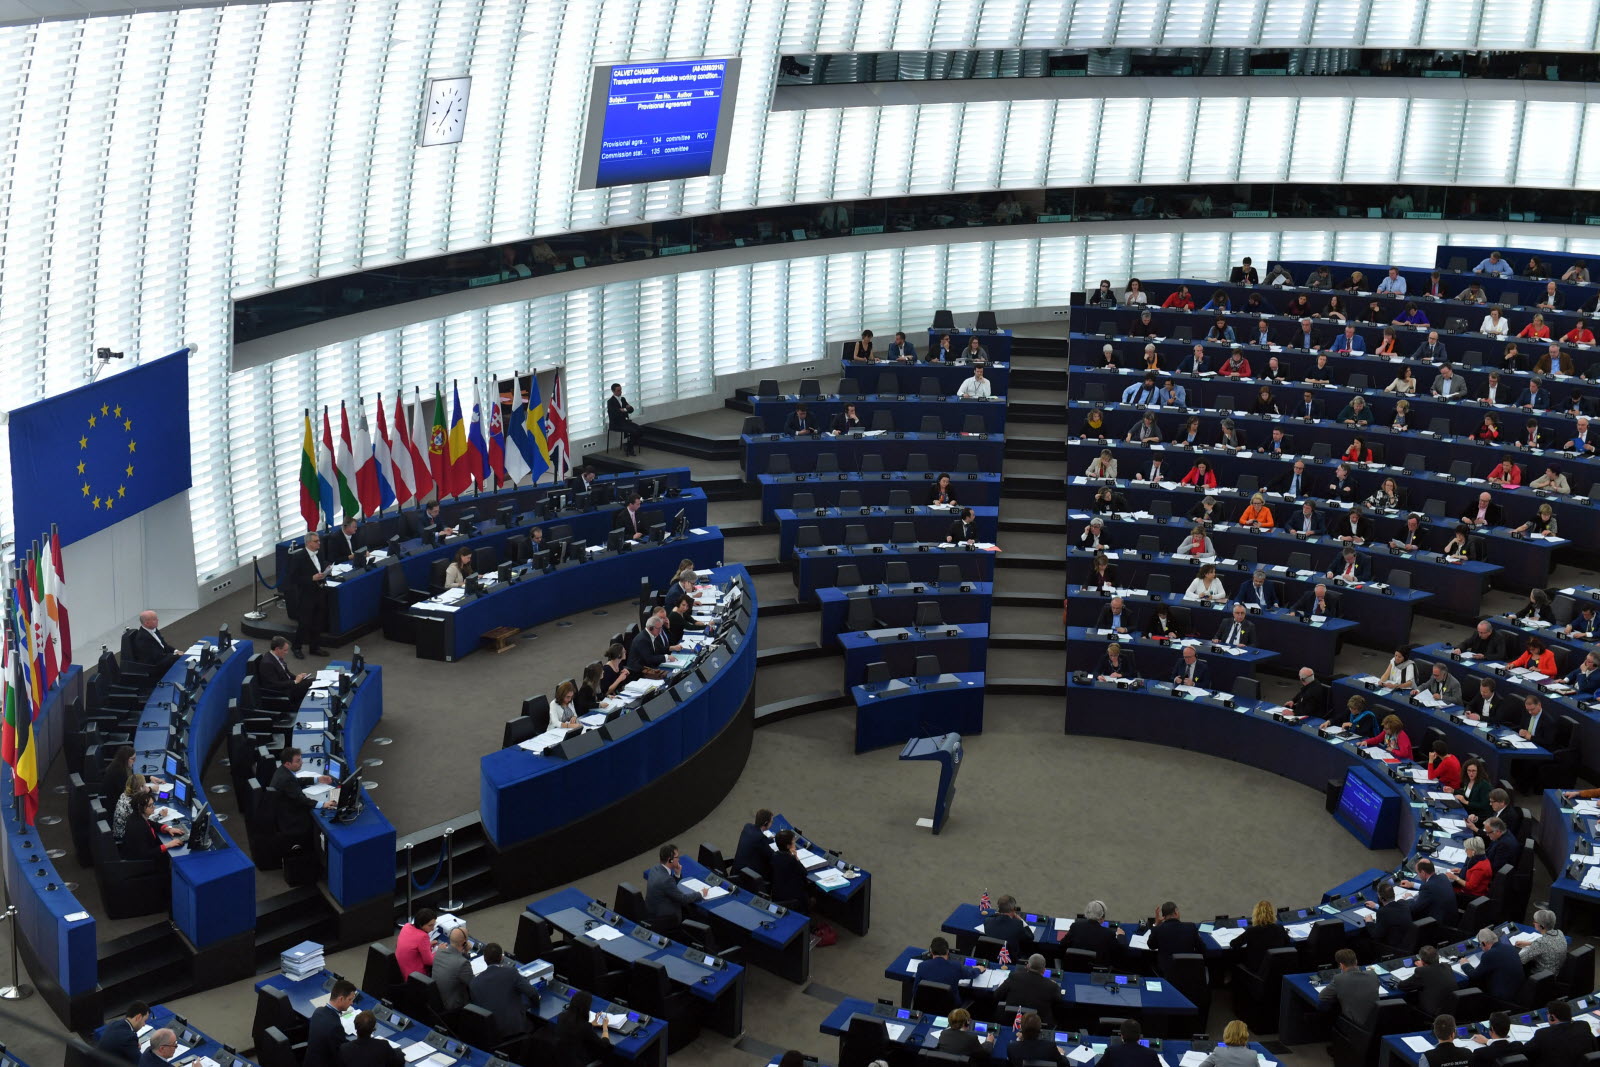 العرب اللندنية: قرار البرلمان الأوروبي تمت حياكته في كواليس السياسة أو دبر بليل